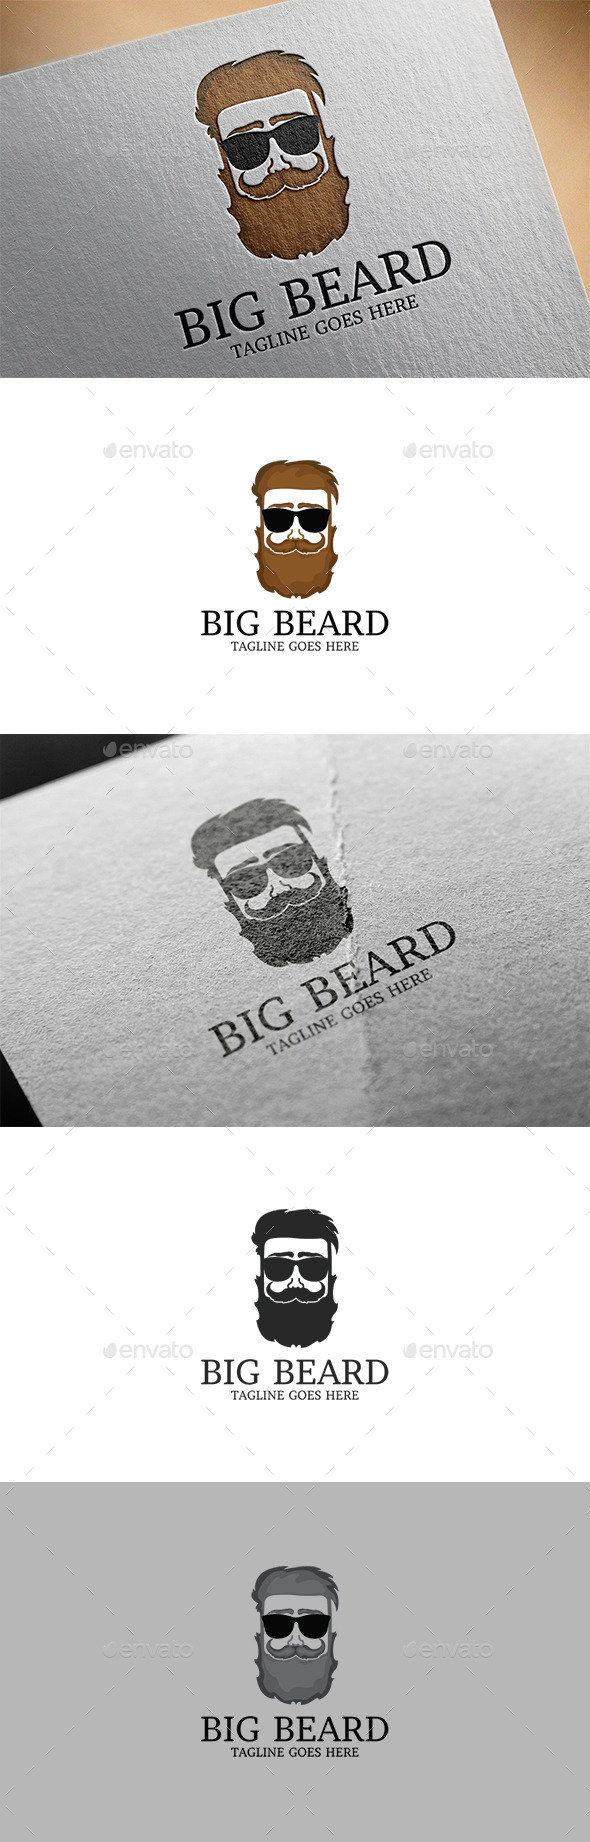 GraphicRiver Beard Logo 11933175